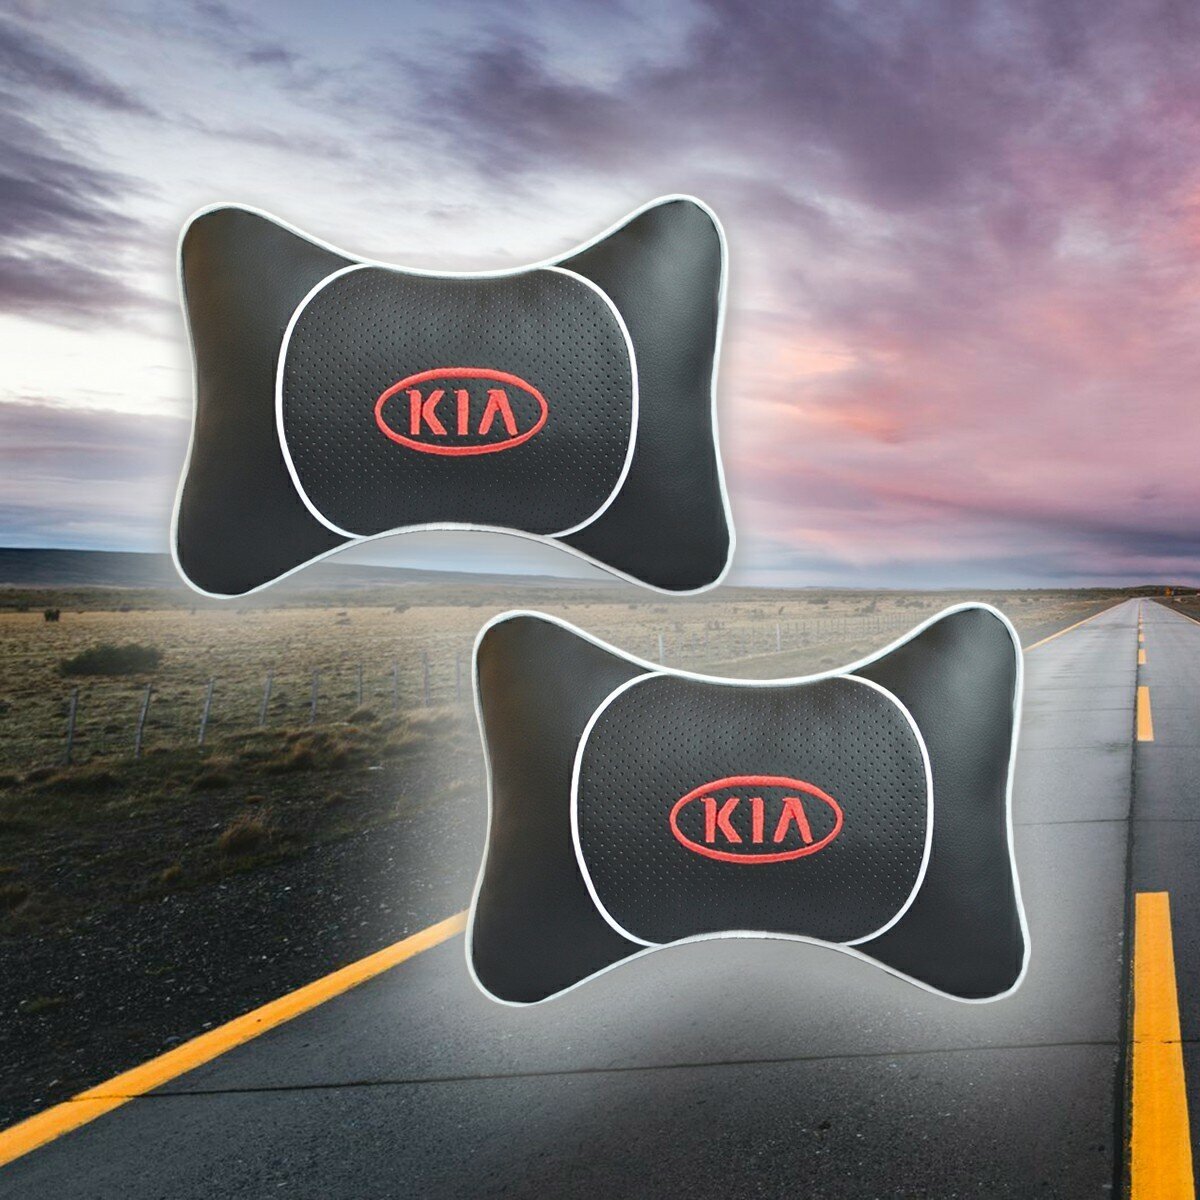 Комплект автомобильных подушек под шею на подголовник с вставкой из бежевой экокожи и вышивкой для KIA (киа) (2 подушки)